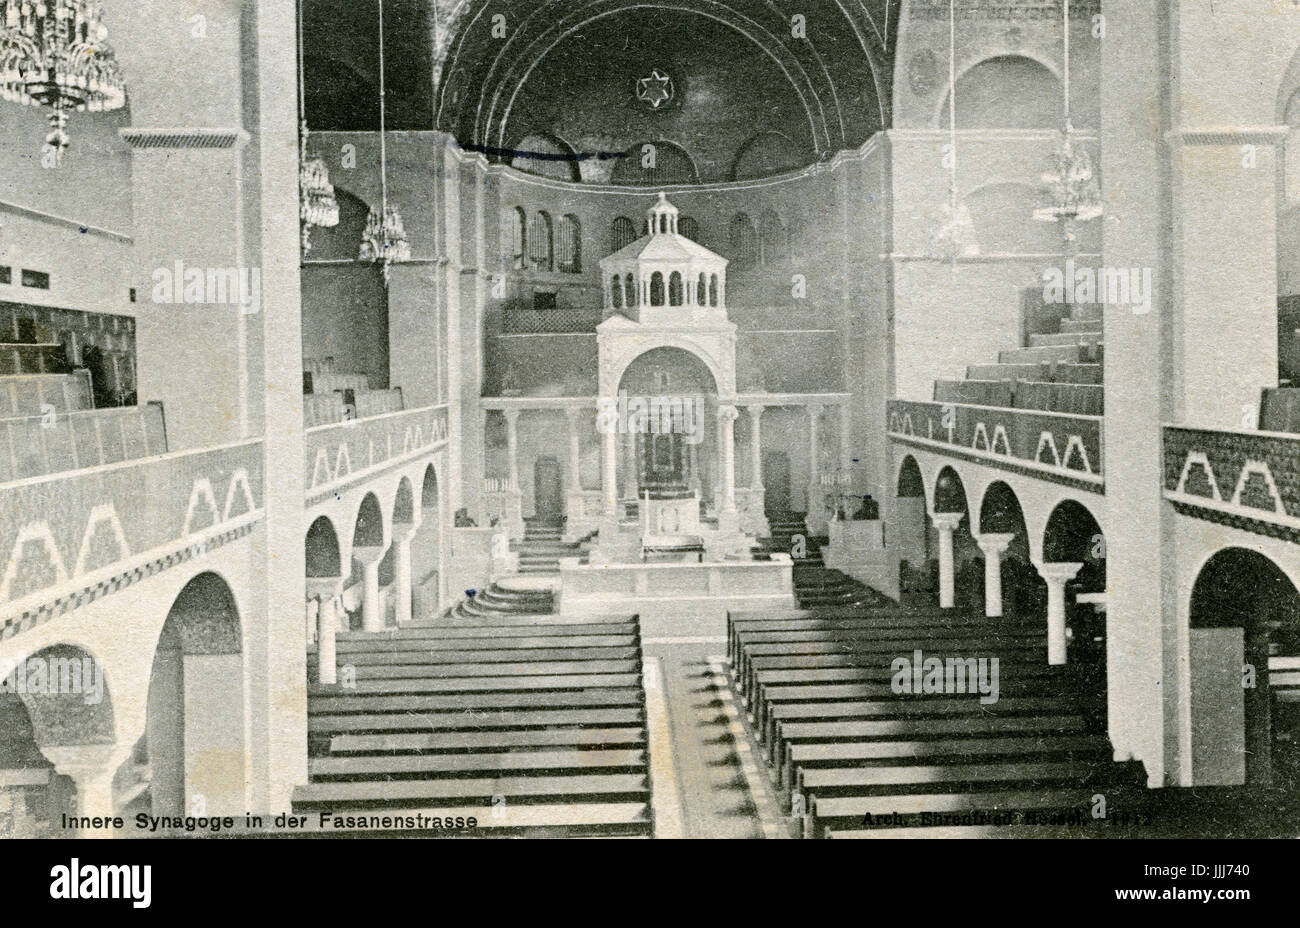 Intérieur de la synagogue, Fasanenstrasse, Berlin (Charlottenburg). L'Allemagne. C. 1913. Banque D'Images